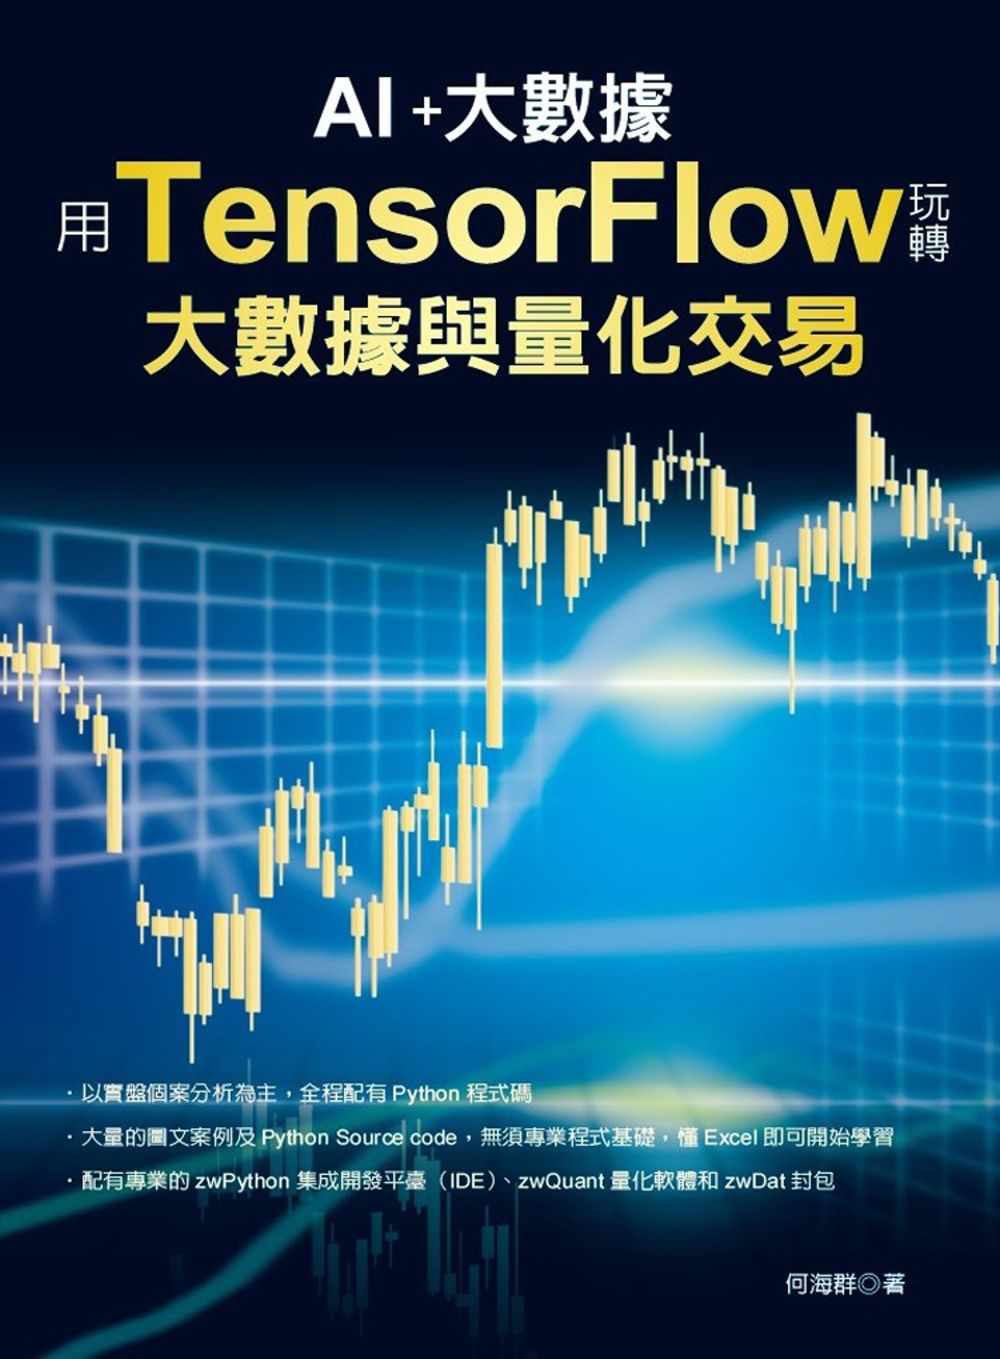 用TensorFlow玩轉大數據與量化交易